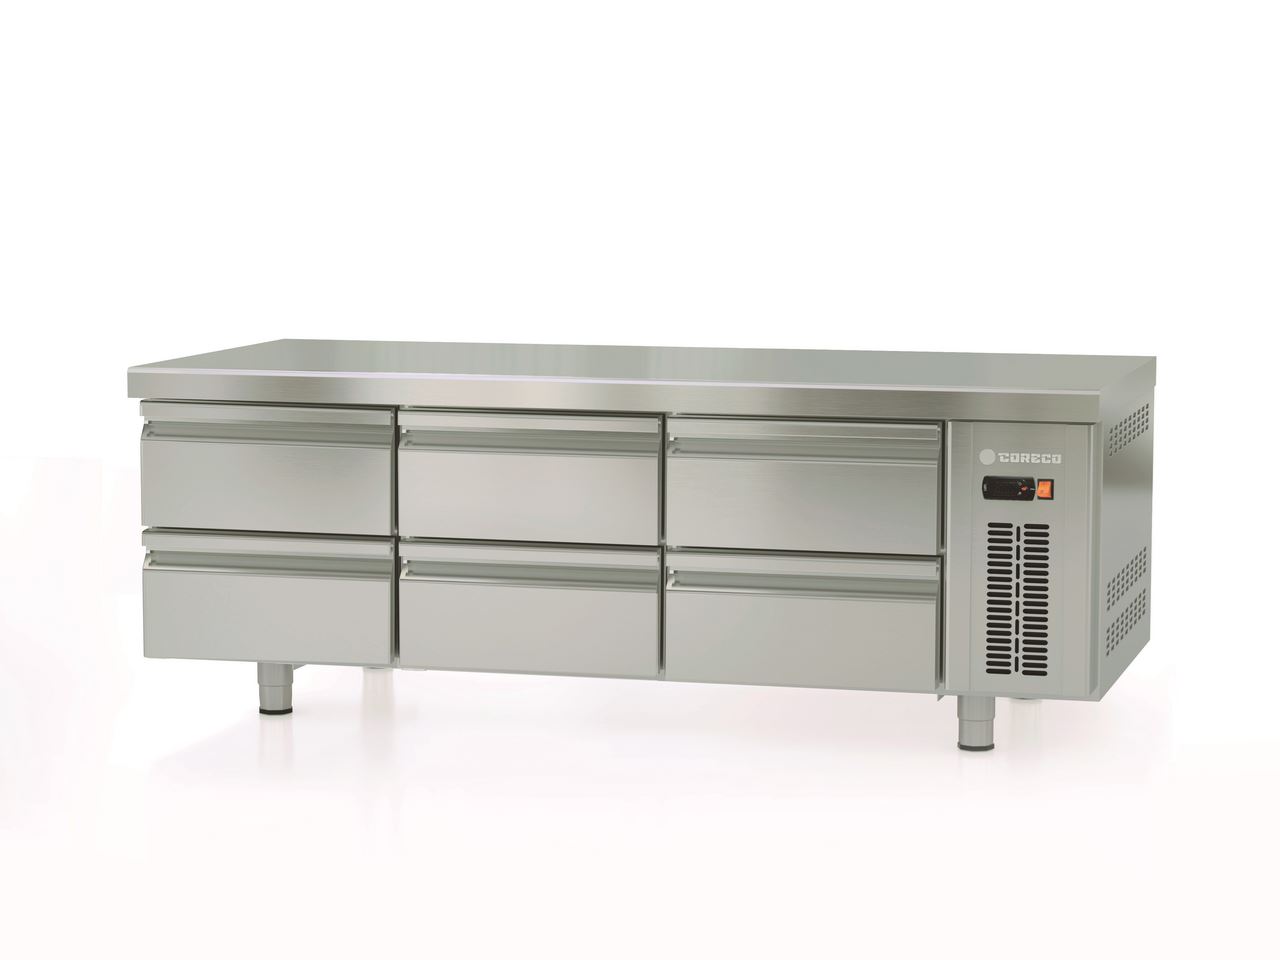 Table réfrigérée soubassement GN1/1 H.600 6 bacs - Coreco - MFB-160-CC